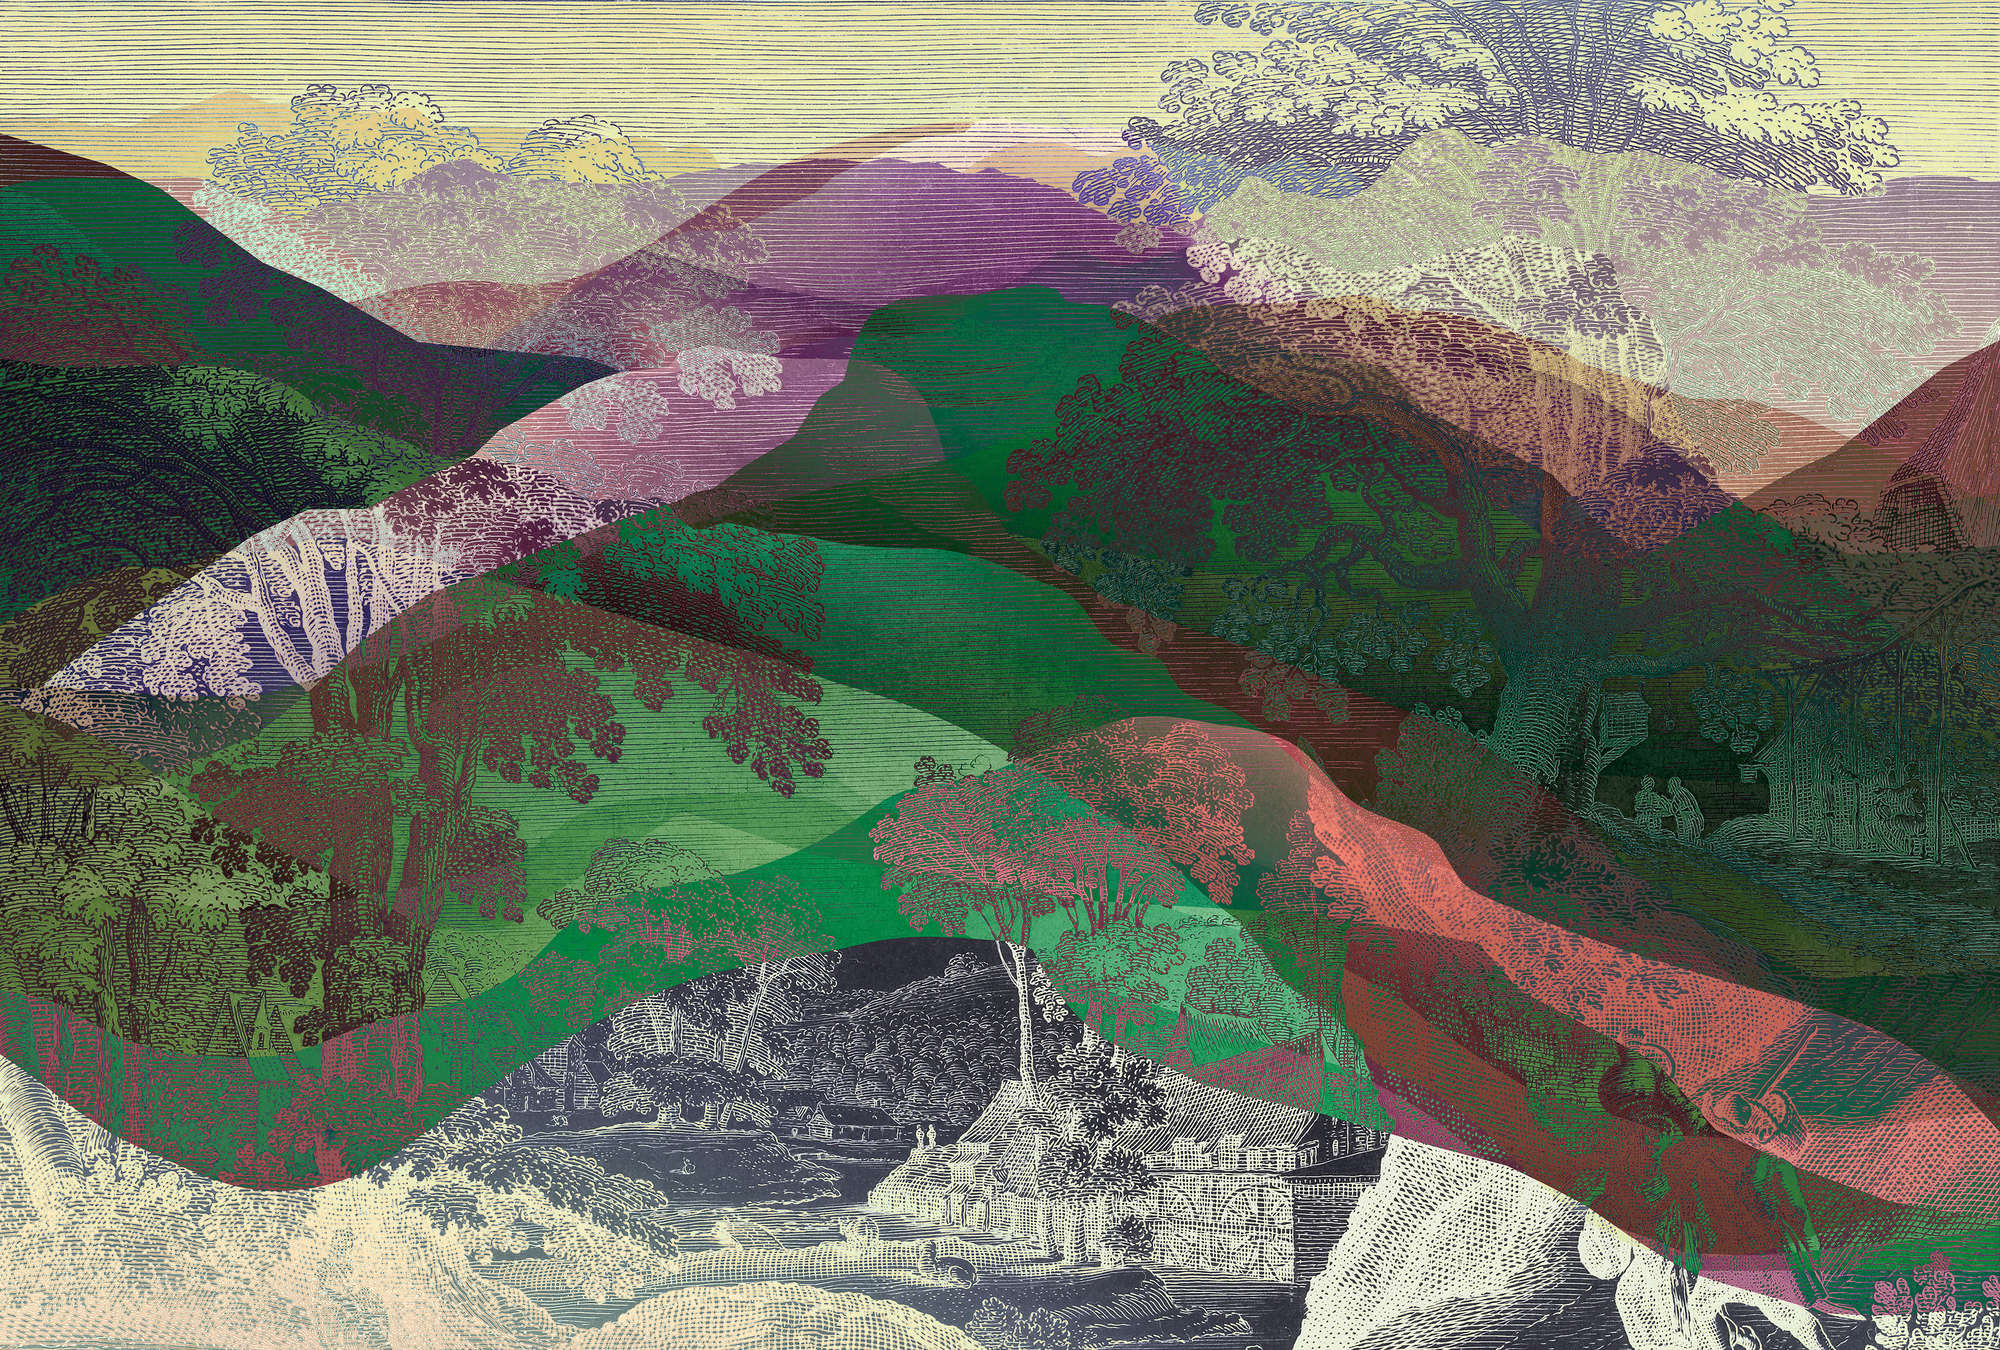             Hidden Valley 1 - Mural de pared Vintage meets Modern Mountain Landscape
        